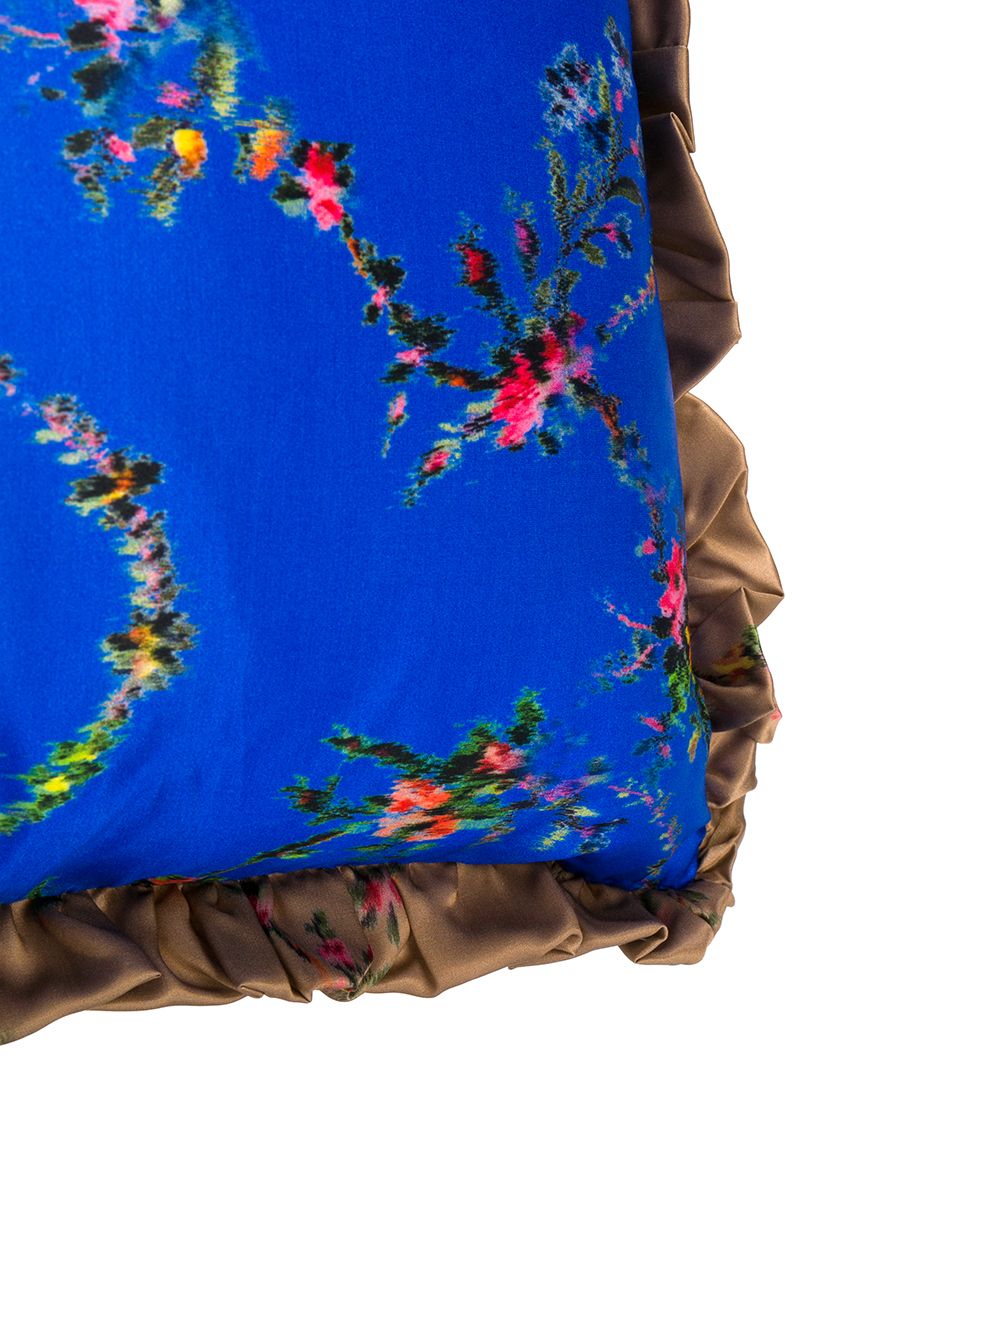 фото Preen by thornton bregazzi подушка с цветочным принтом